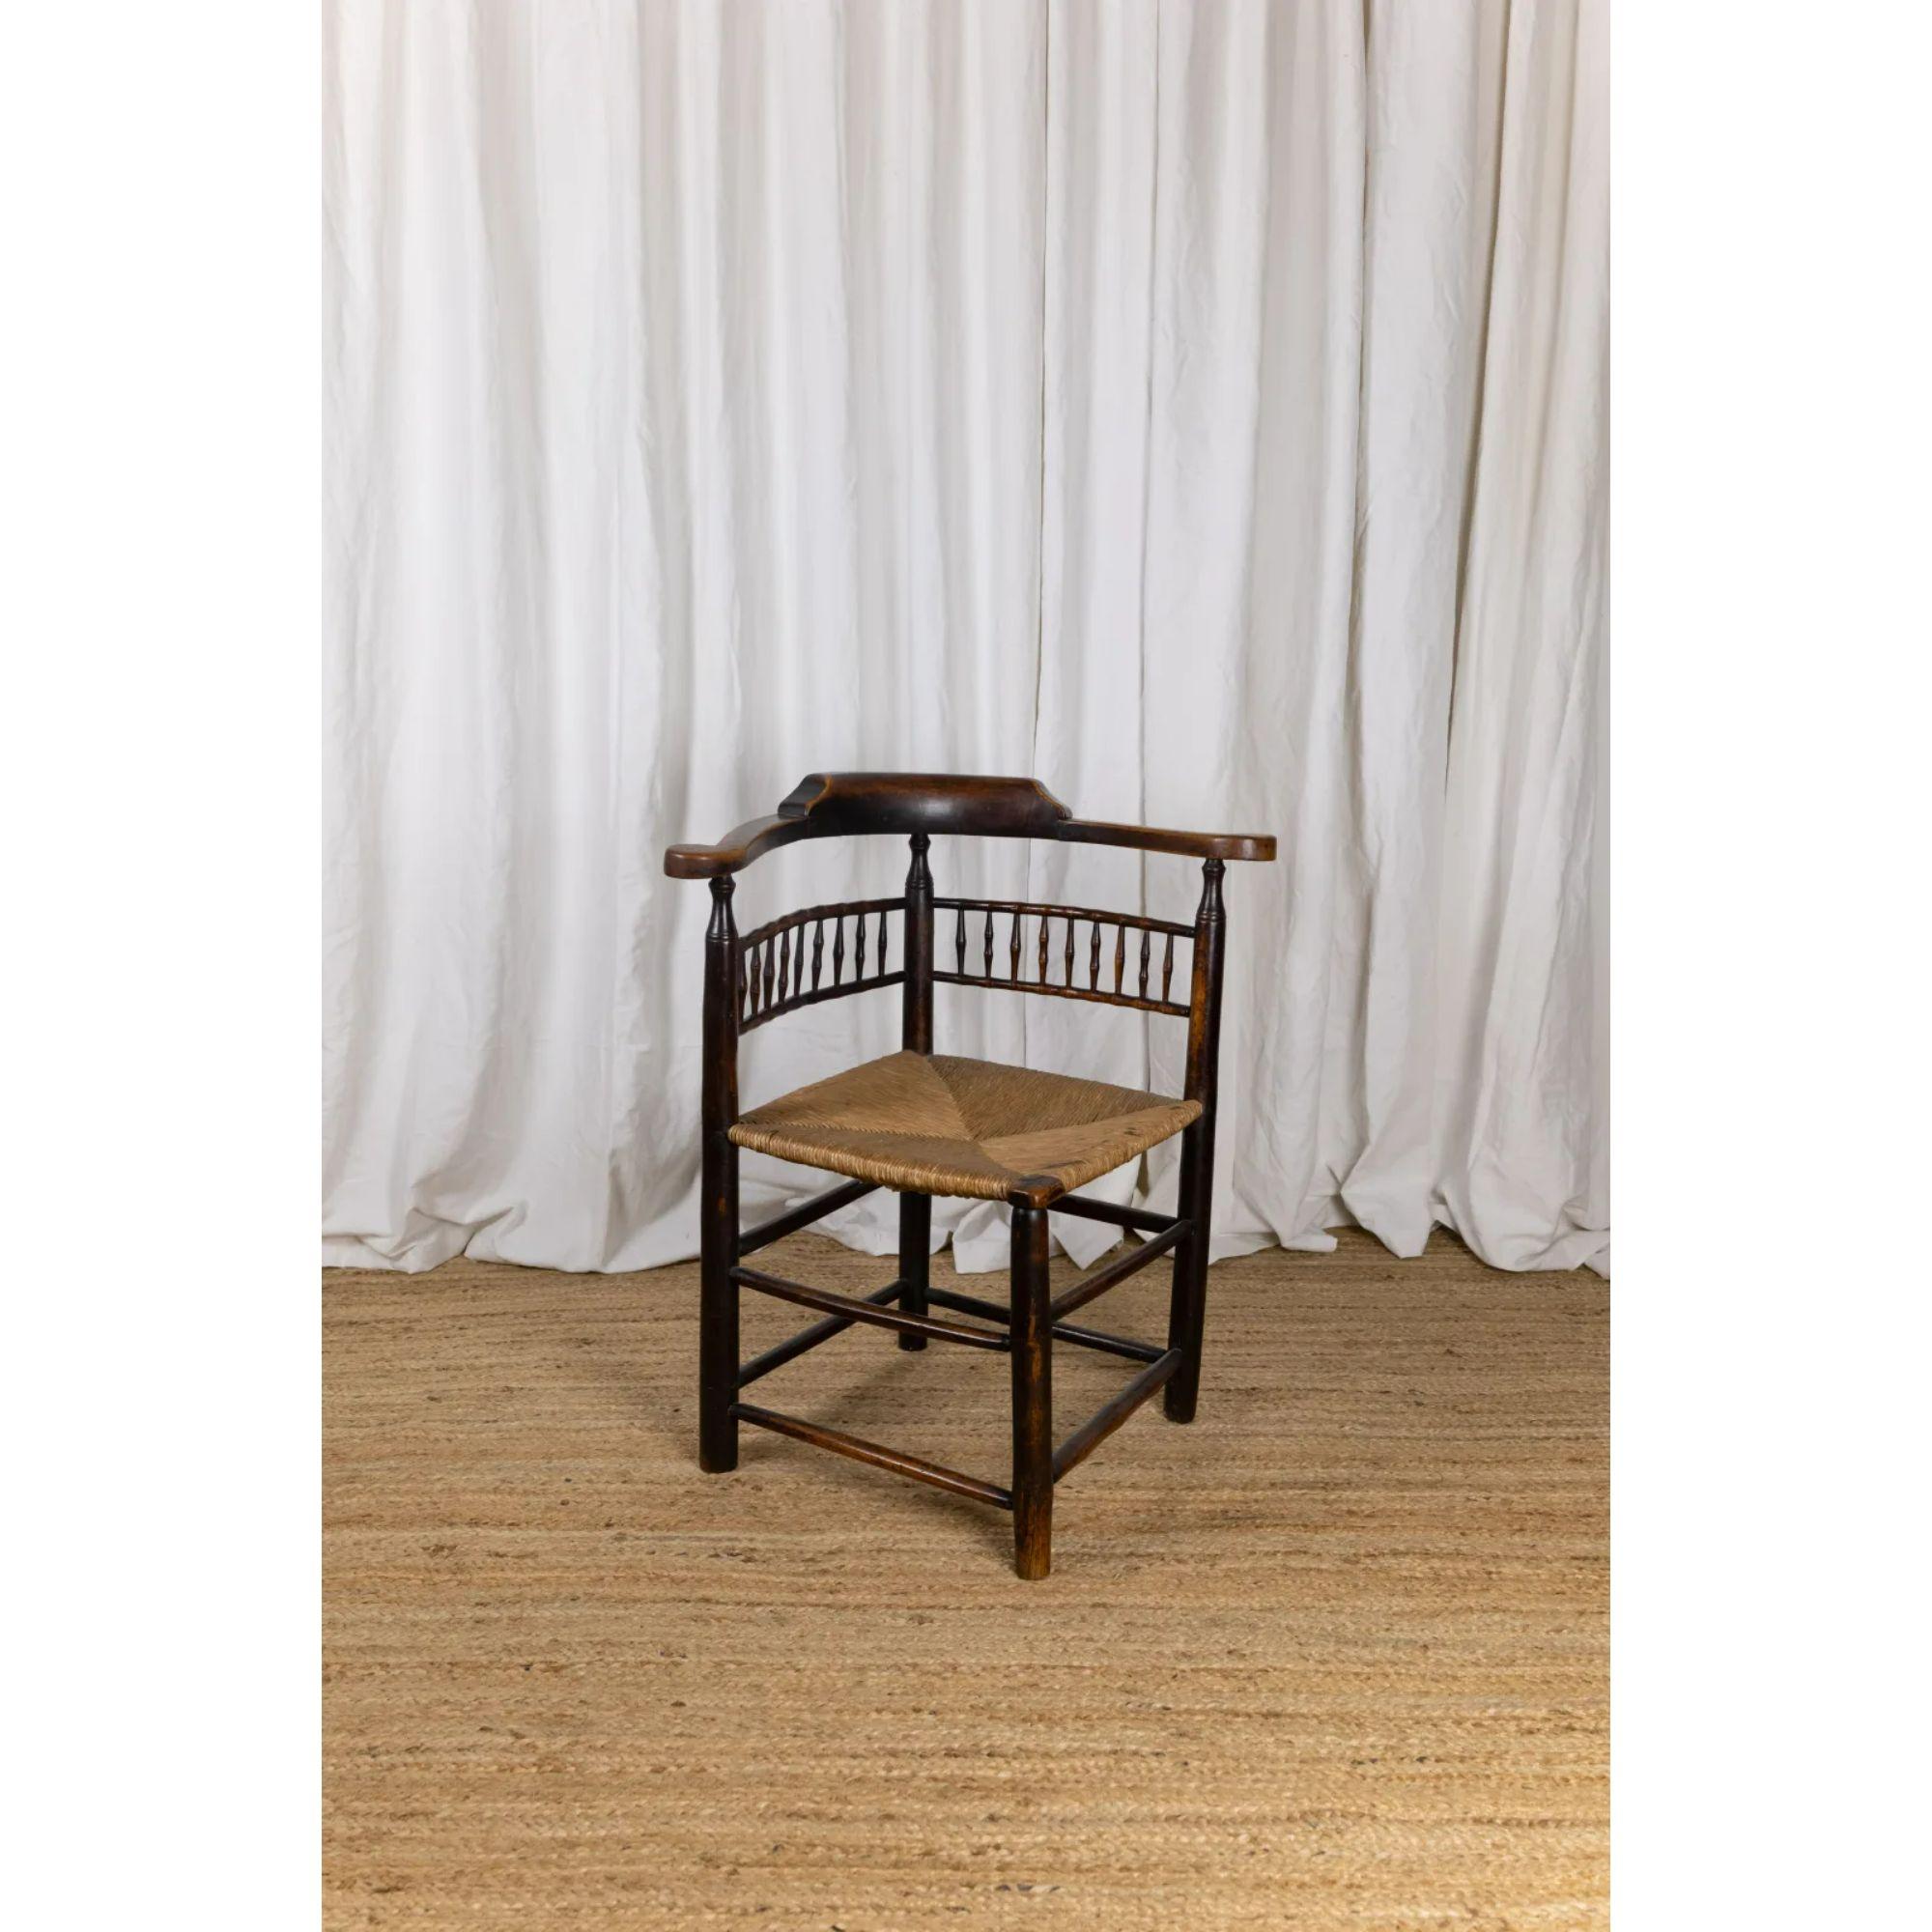 Englischer Ulmen-Eckstuhl, frühes 19. Jahrhundert

Ein Eckstuhl aus Ulme aus dem frühen 19. Jahrhundert mit einem Sitz aus Binsen und ungewöhnlichen Details aus simuliertem Bambus in der Rückenlehne.

Ein schönes Beispiel für einen vollständig